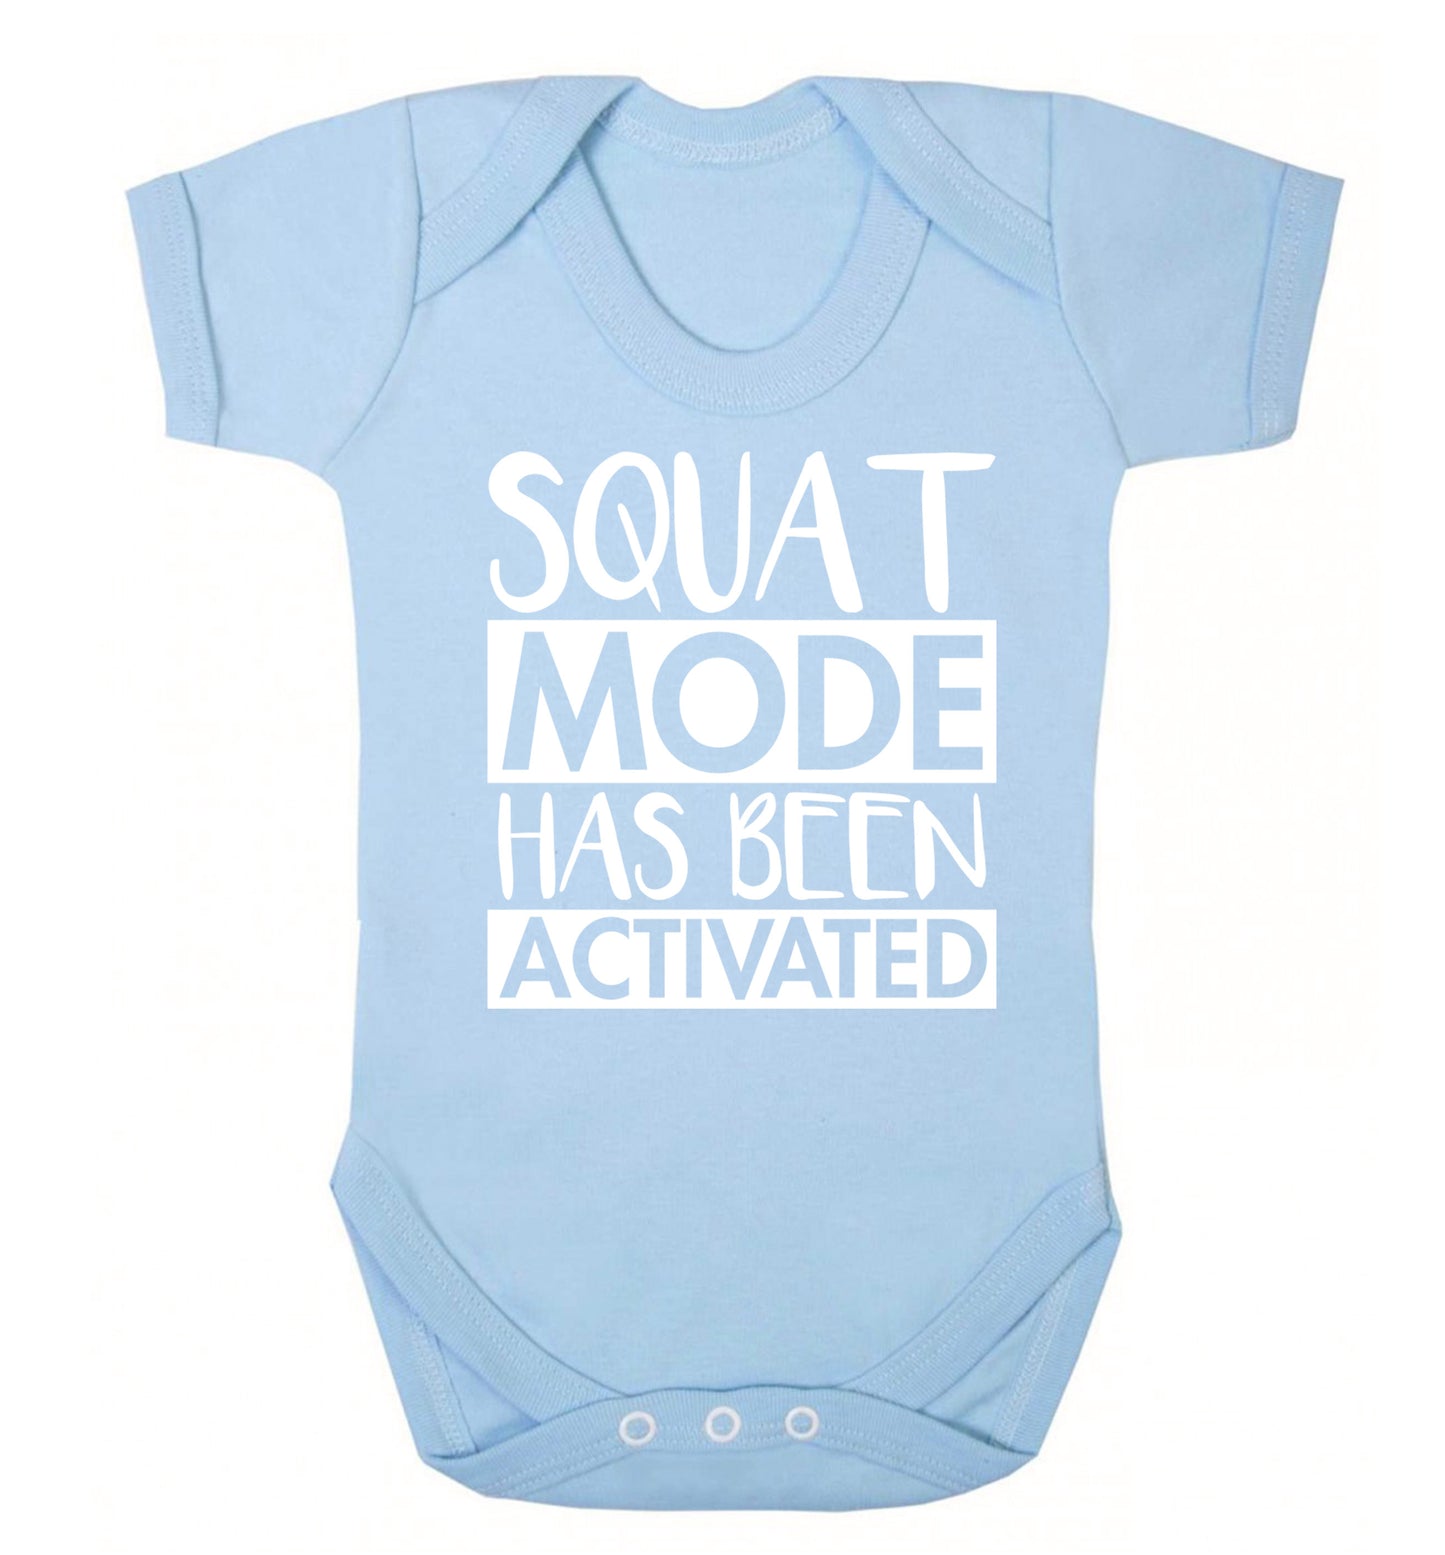 Squat mode activated Baby Vest pale blue 18-24 months